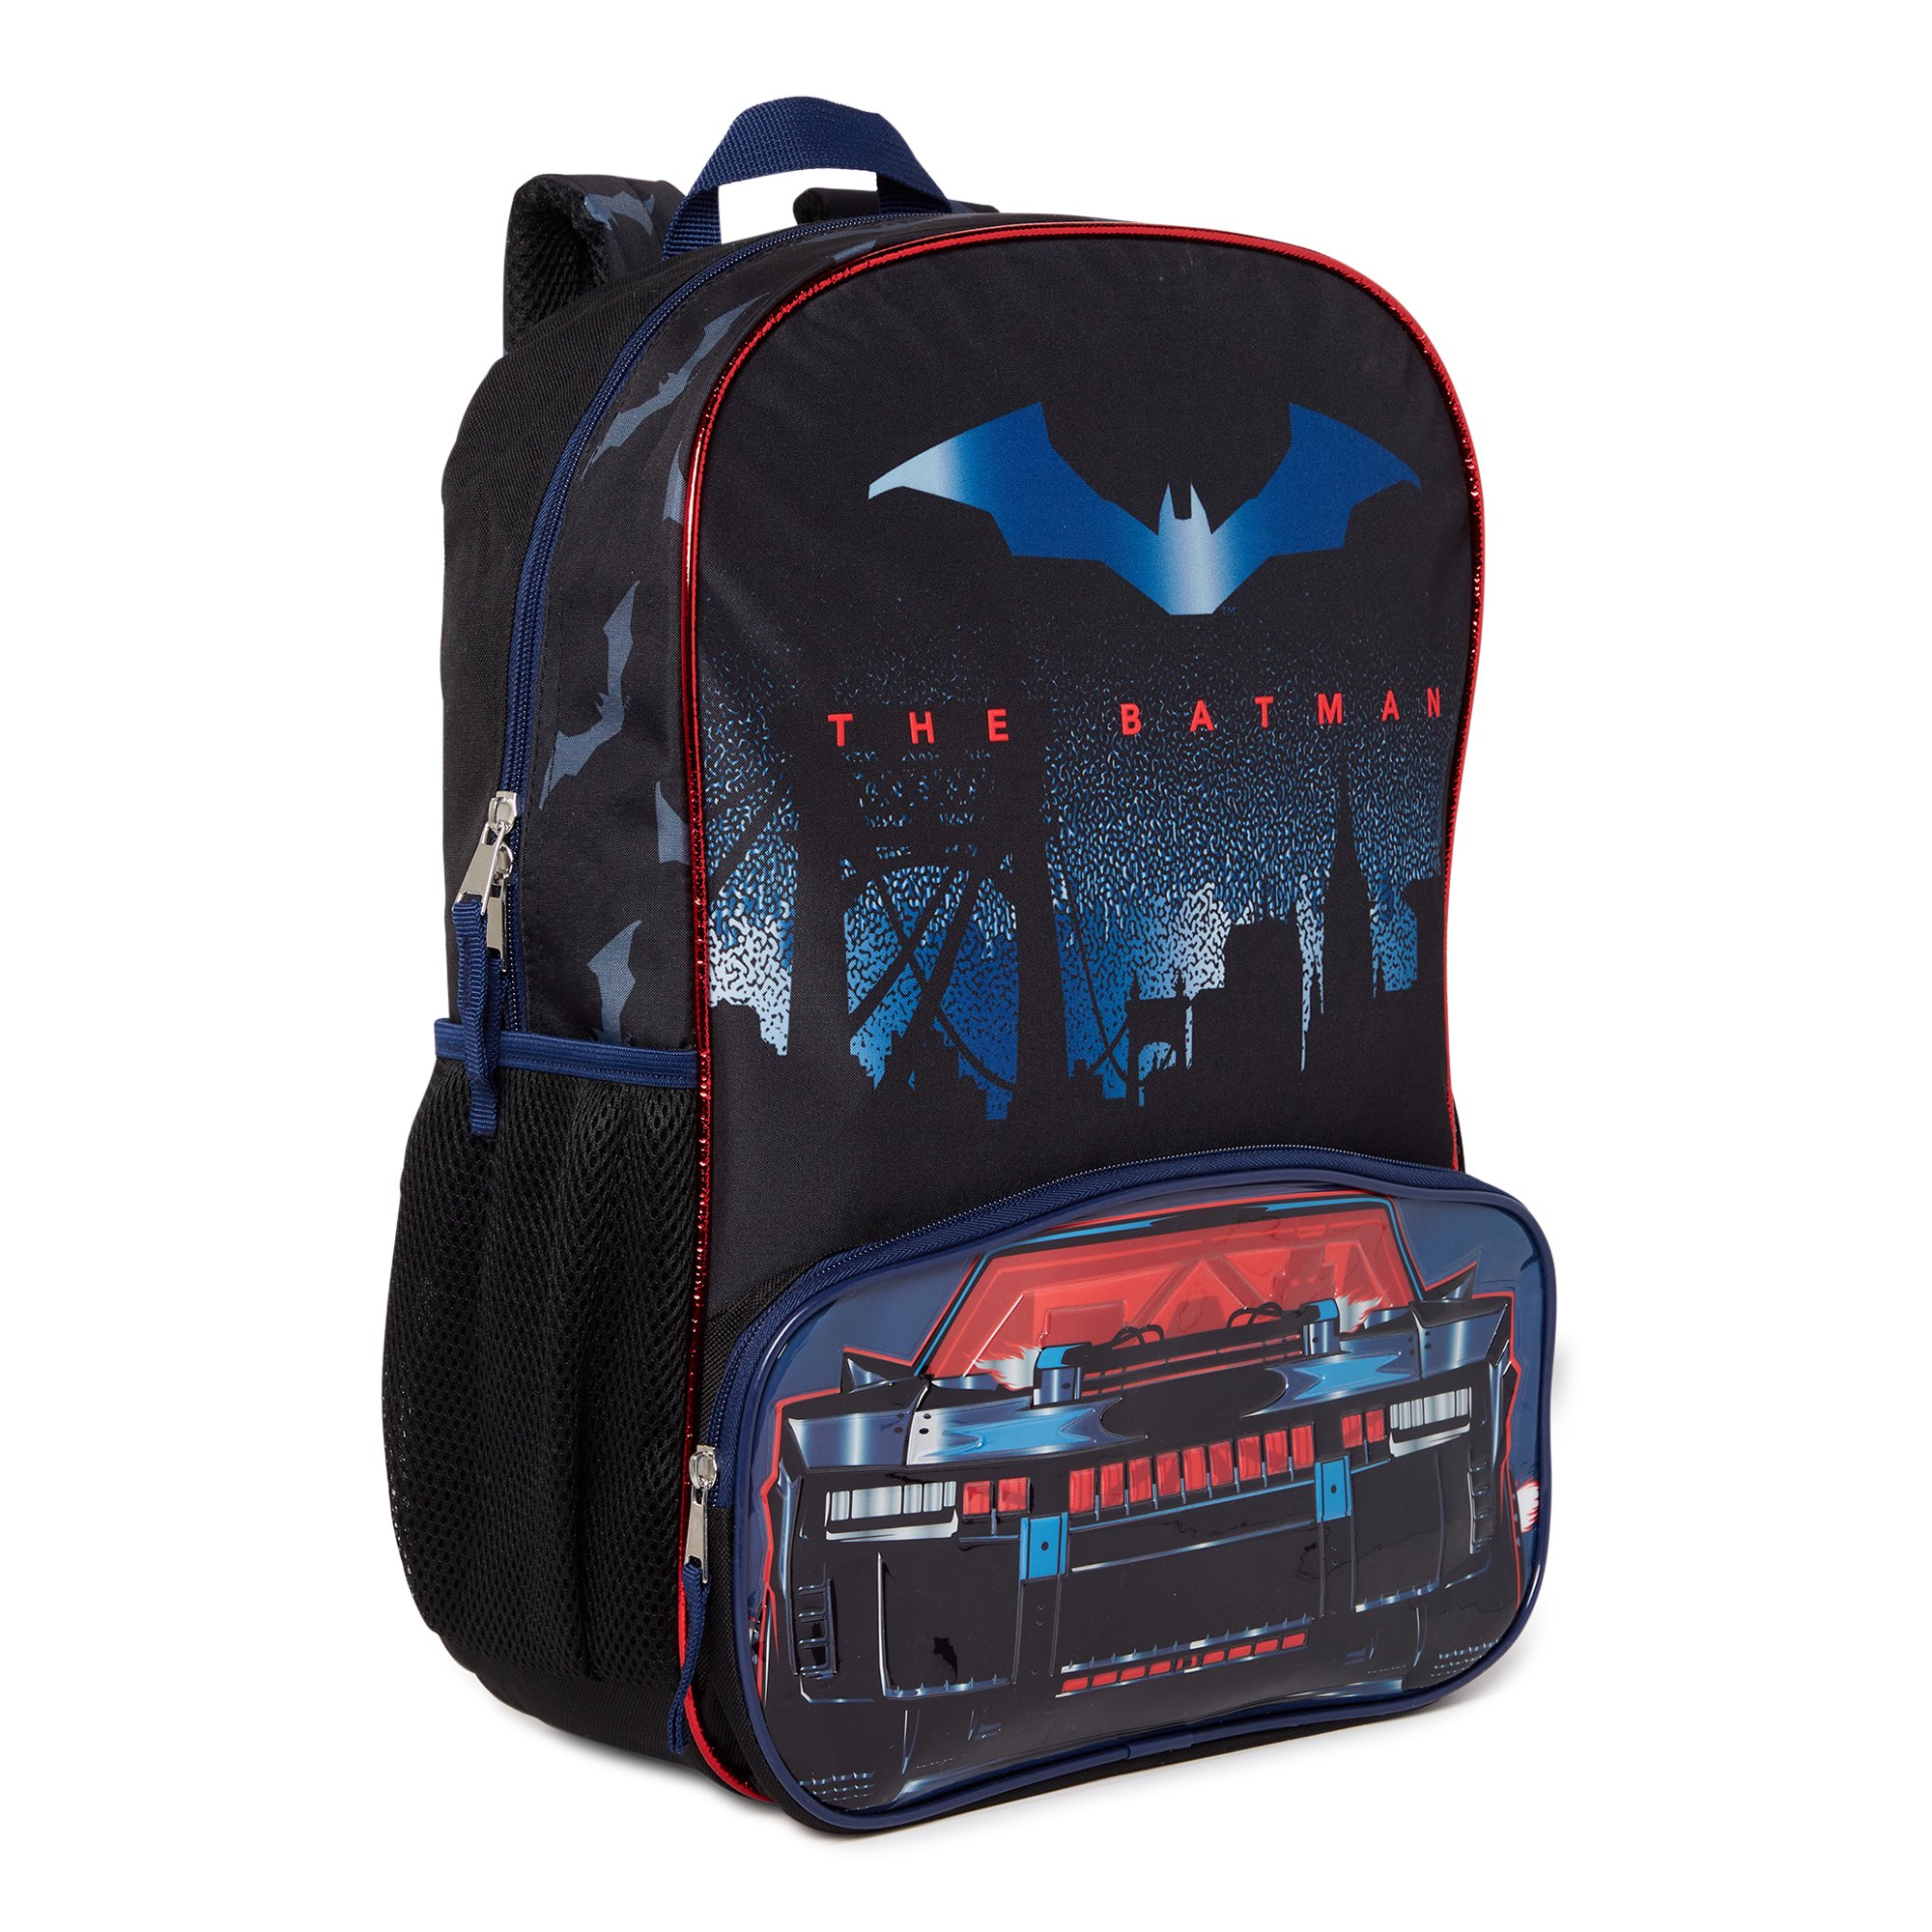 DC Comics Warner Bros. DC Comics The Batman Bat Mobile 17" Backpack, Black Batmobile Bag